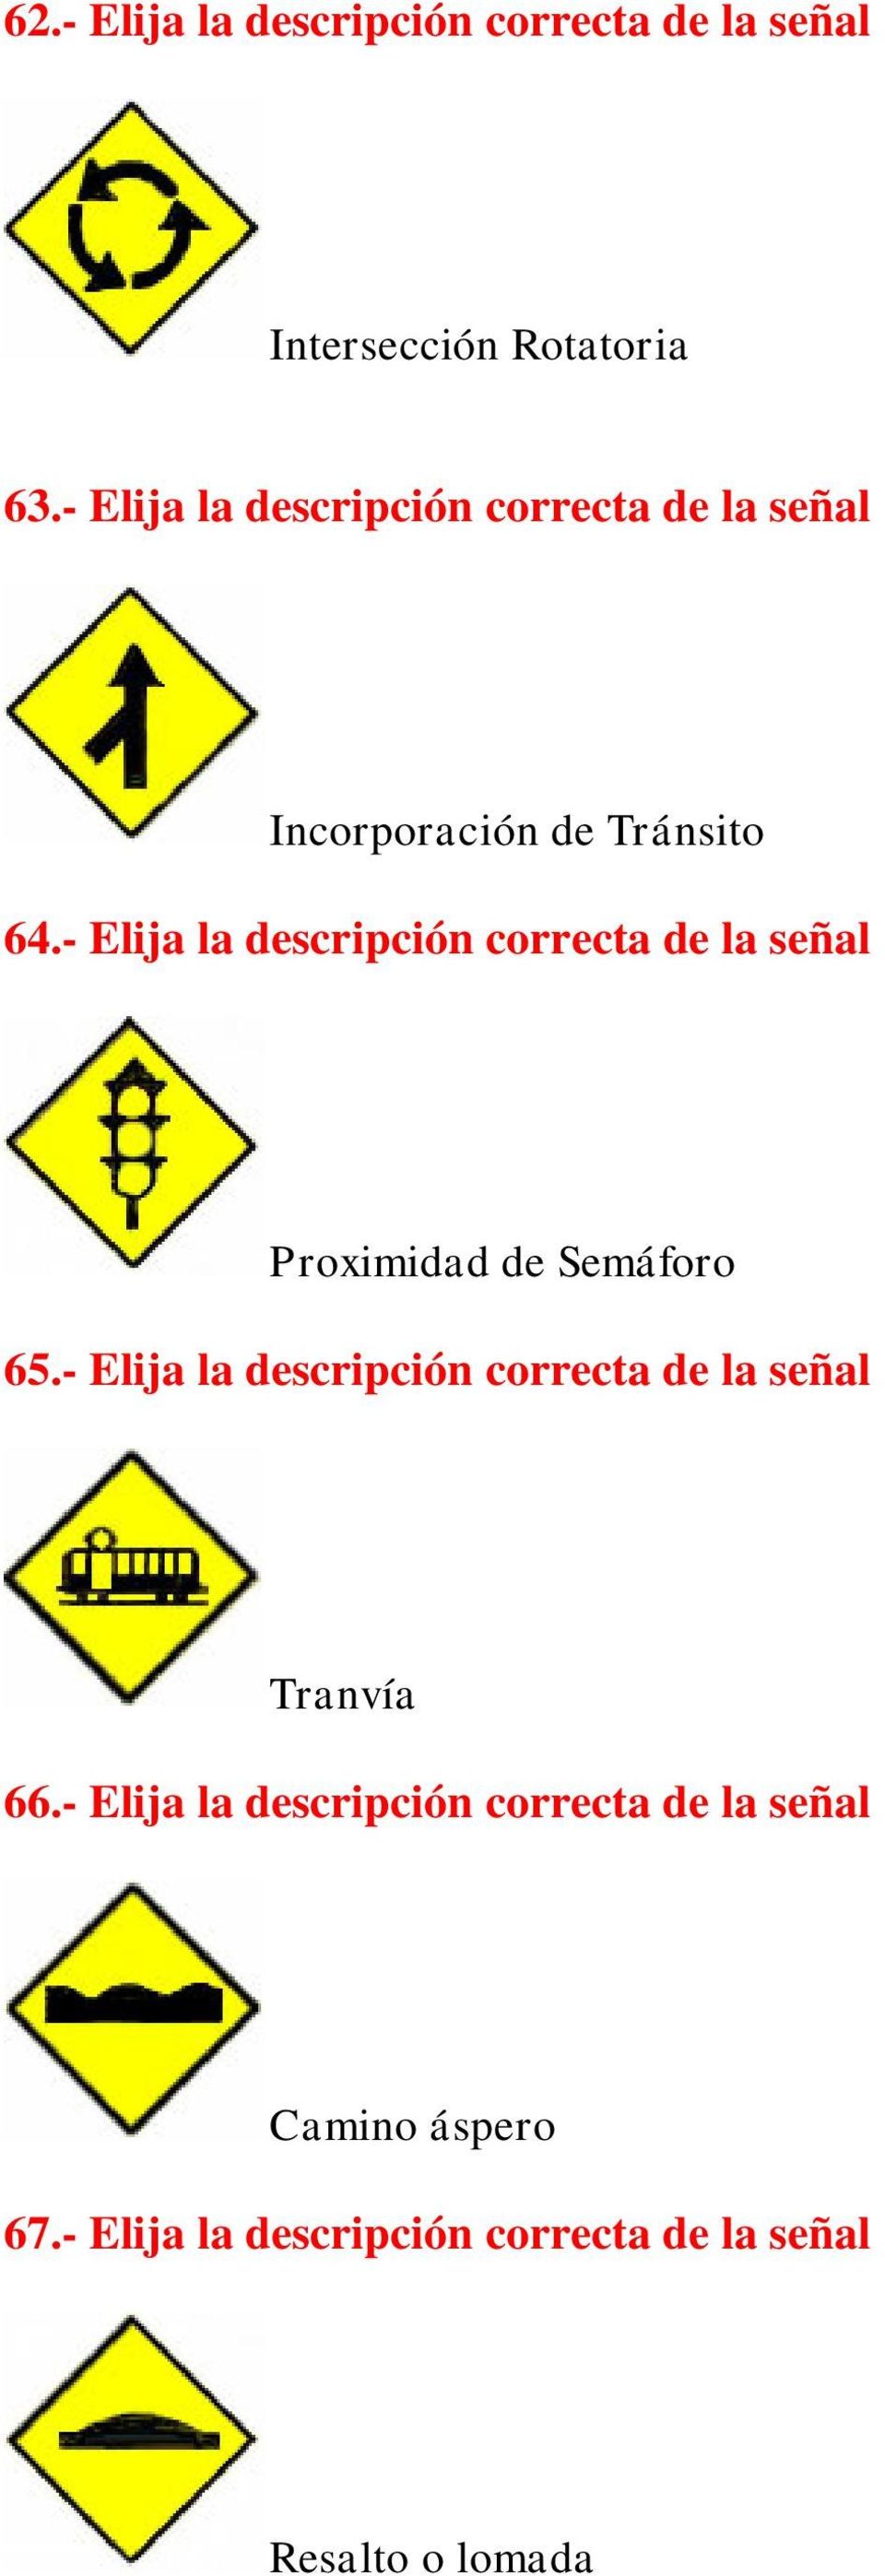 - Elija la descripción correcta de la señal Proximidad de Semáforo 65.